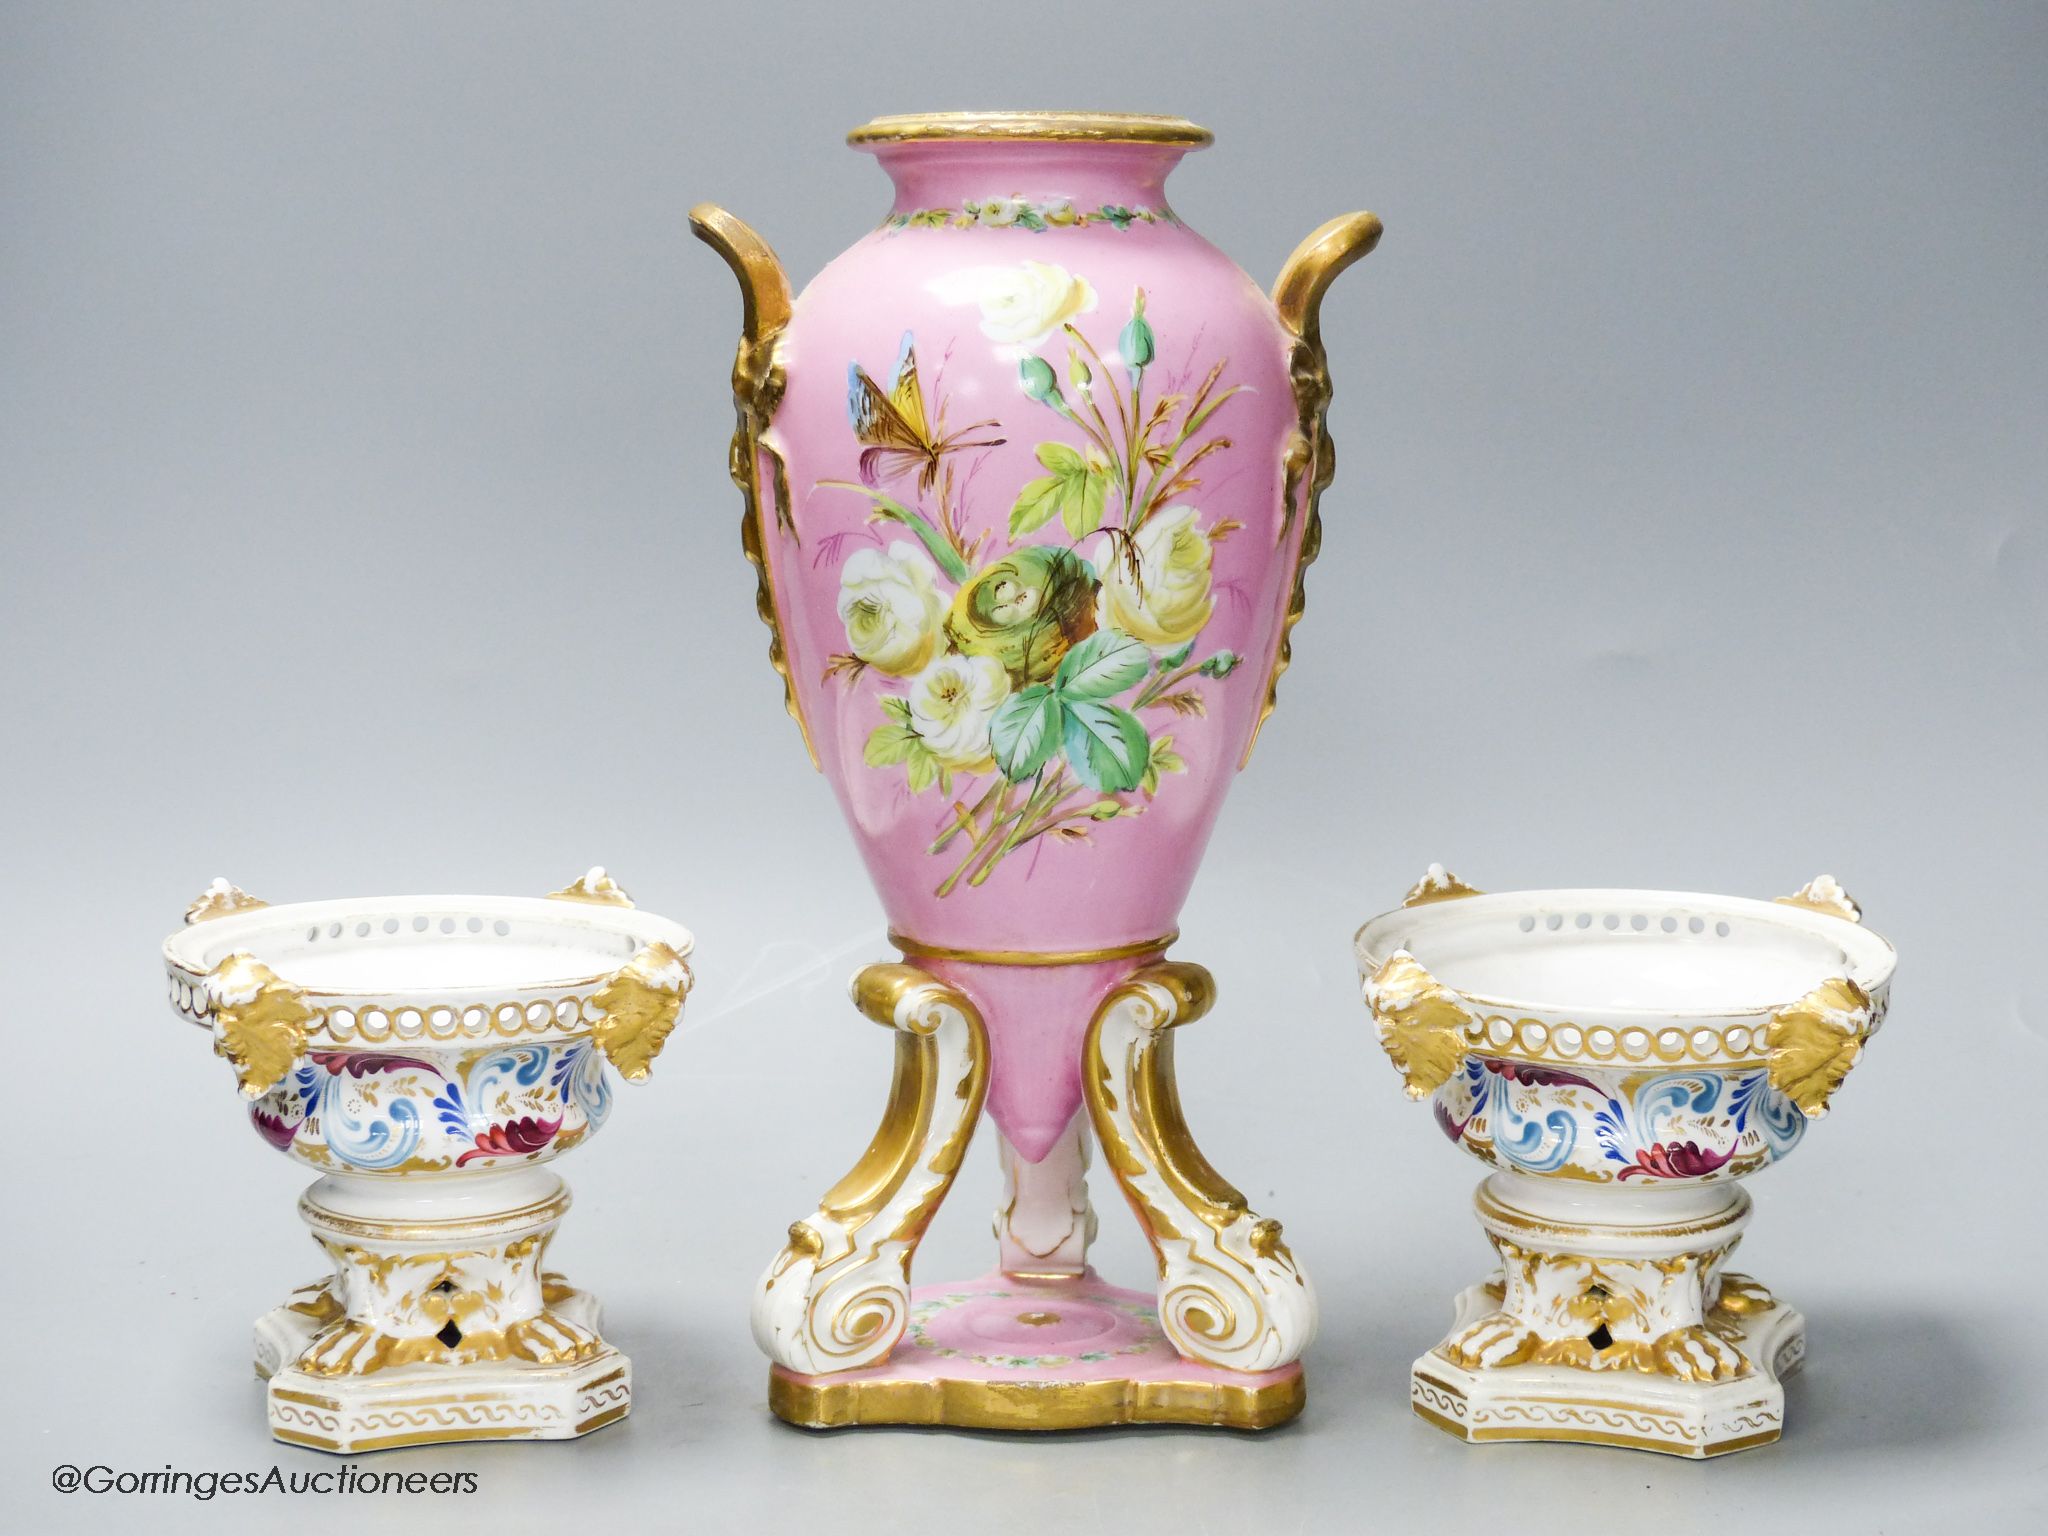 A pair of 19th century Derby pot pourri vases and a Paris porcelain pink ground vase